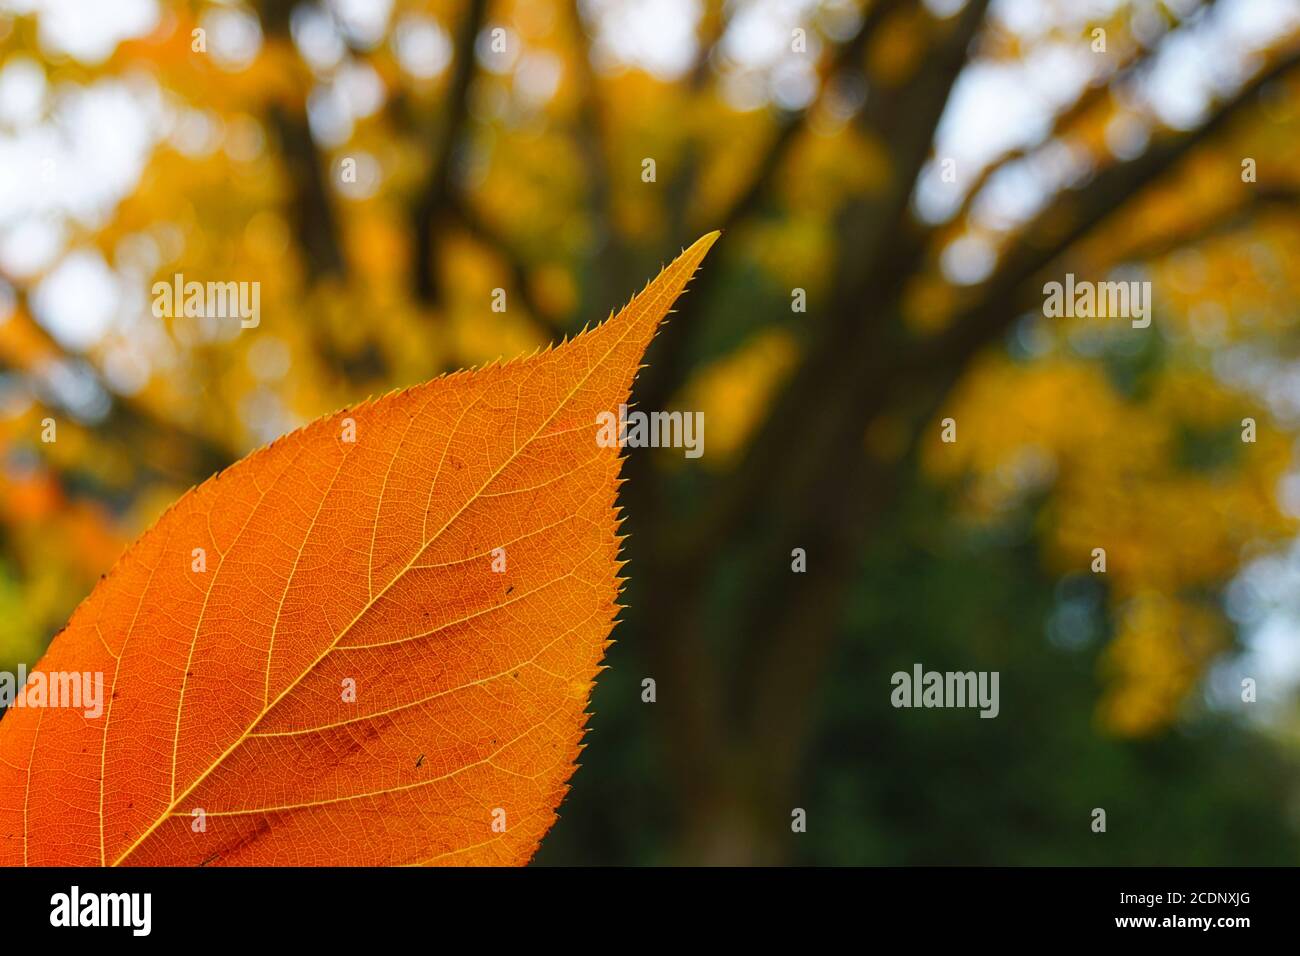 Nahaufnahme mit selektivem Fokus auf ein farbenprächtiges orangefarbenes Herbstblatt. Baum mit gelben Blättern im verschwommenen Hintergrund. Stockfoto